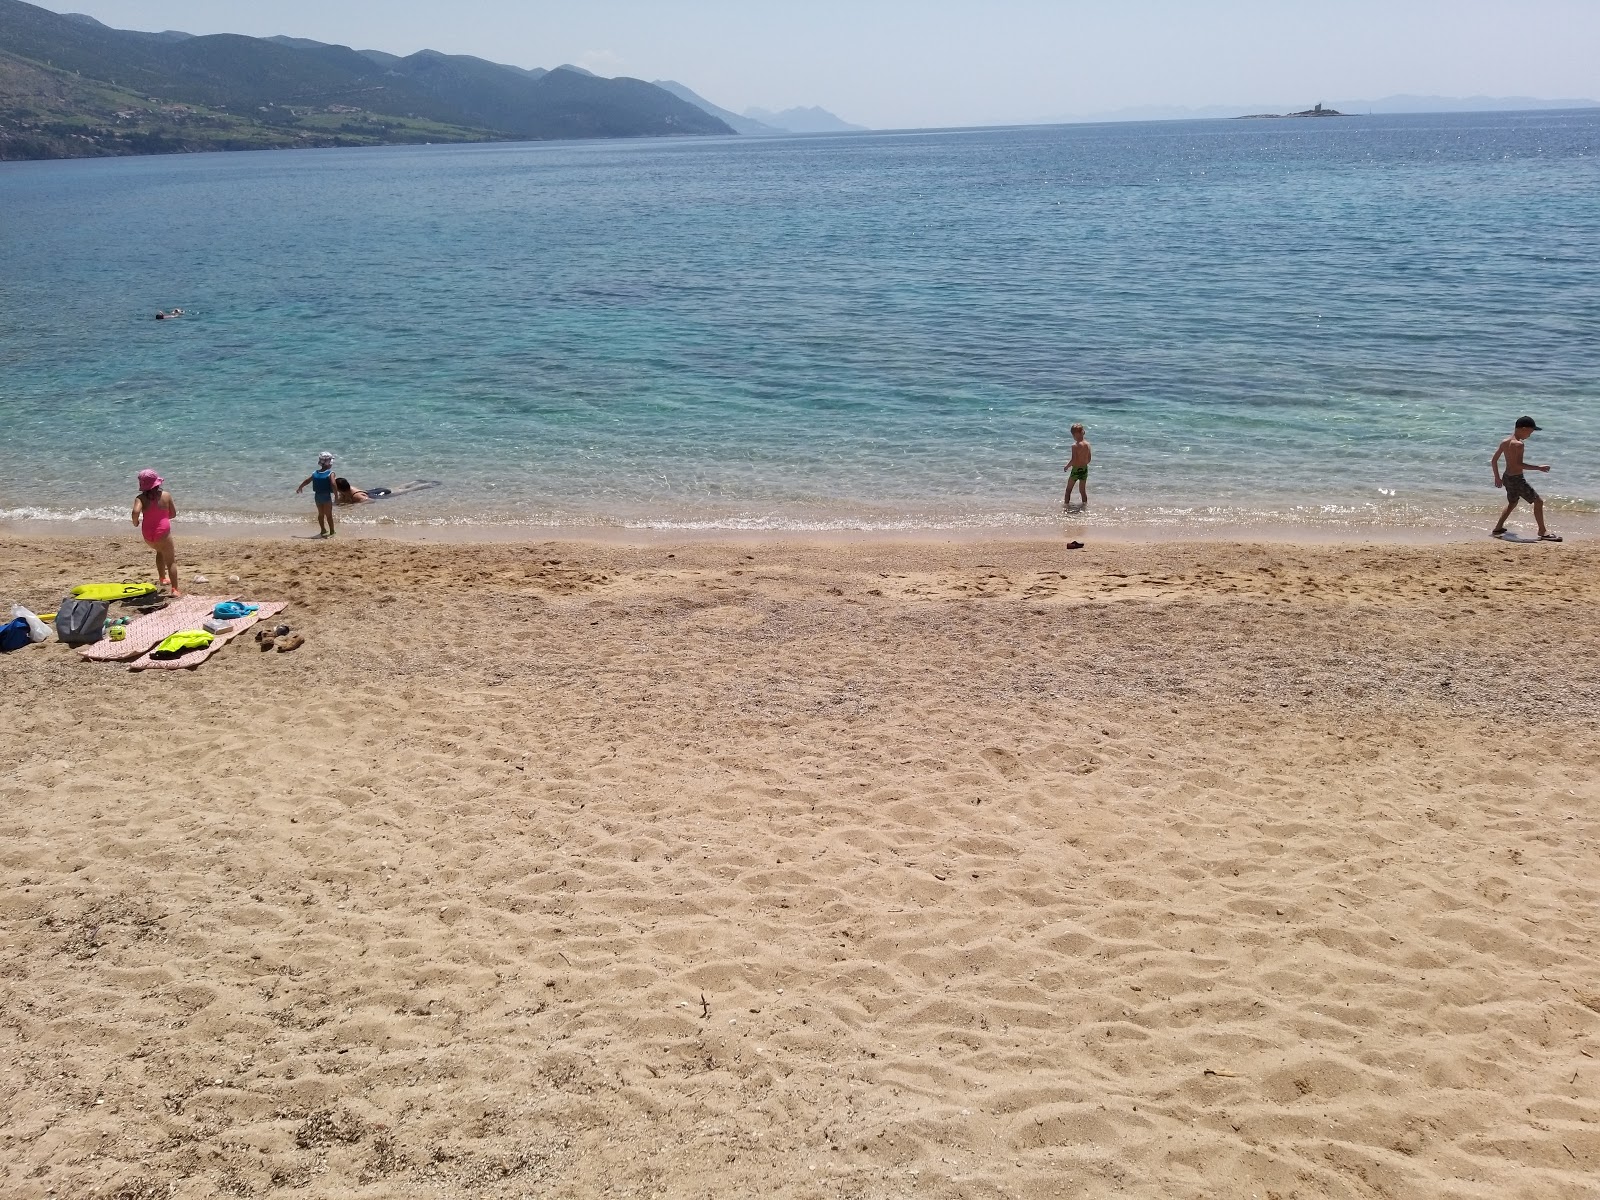 Fotografie cu Trstenica beach cu o suprafață de apă pură albastră